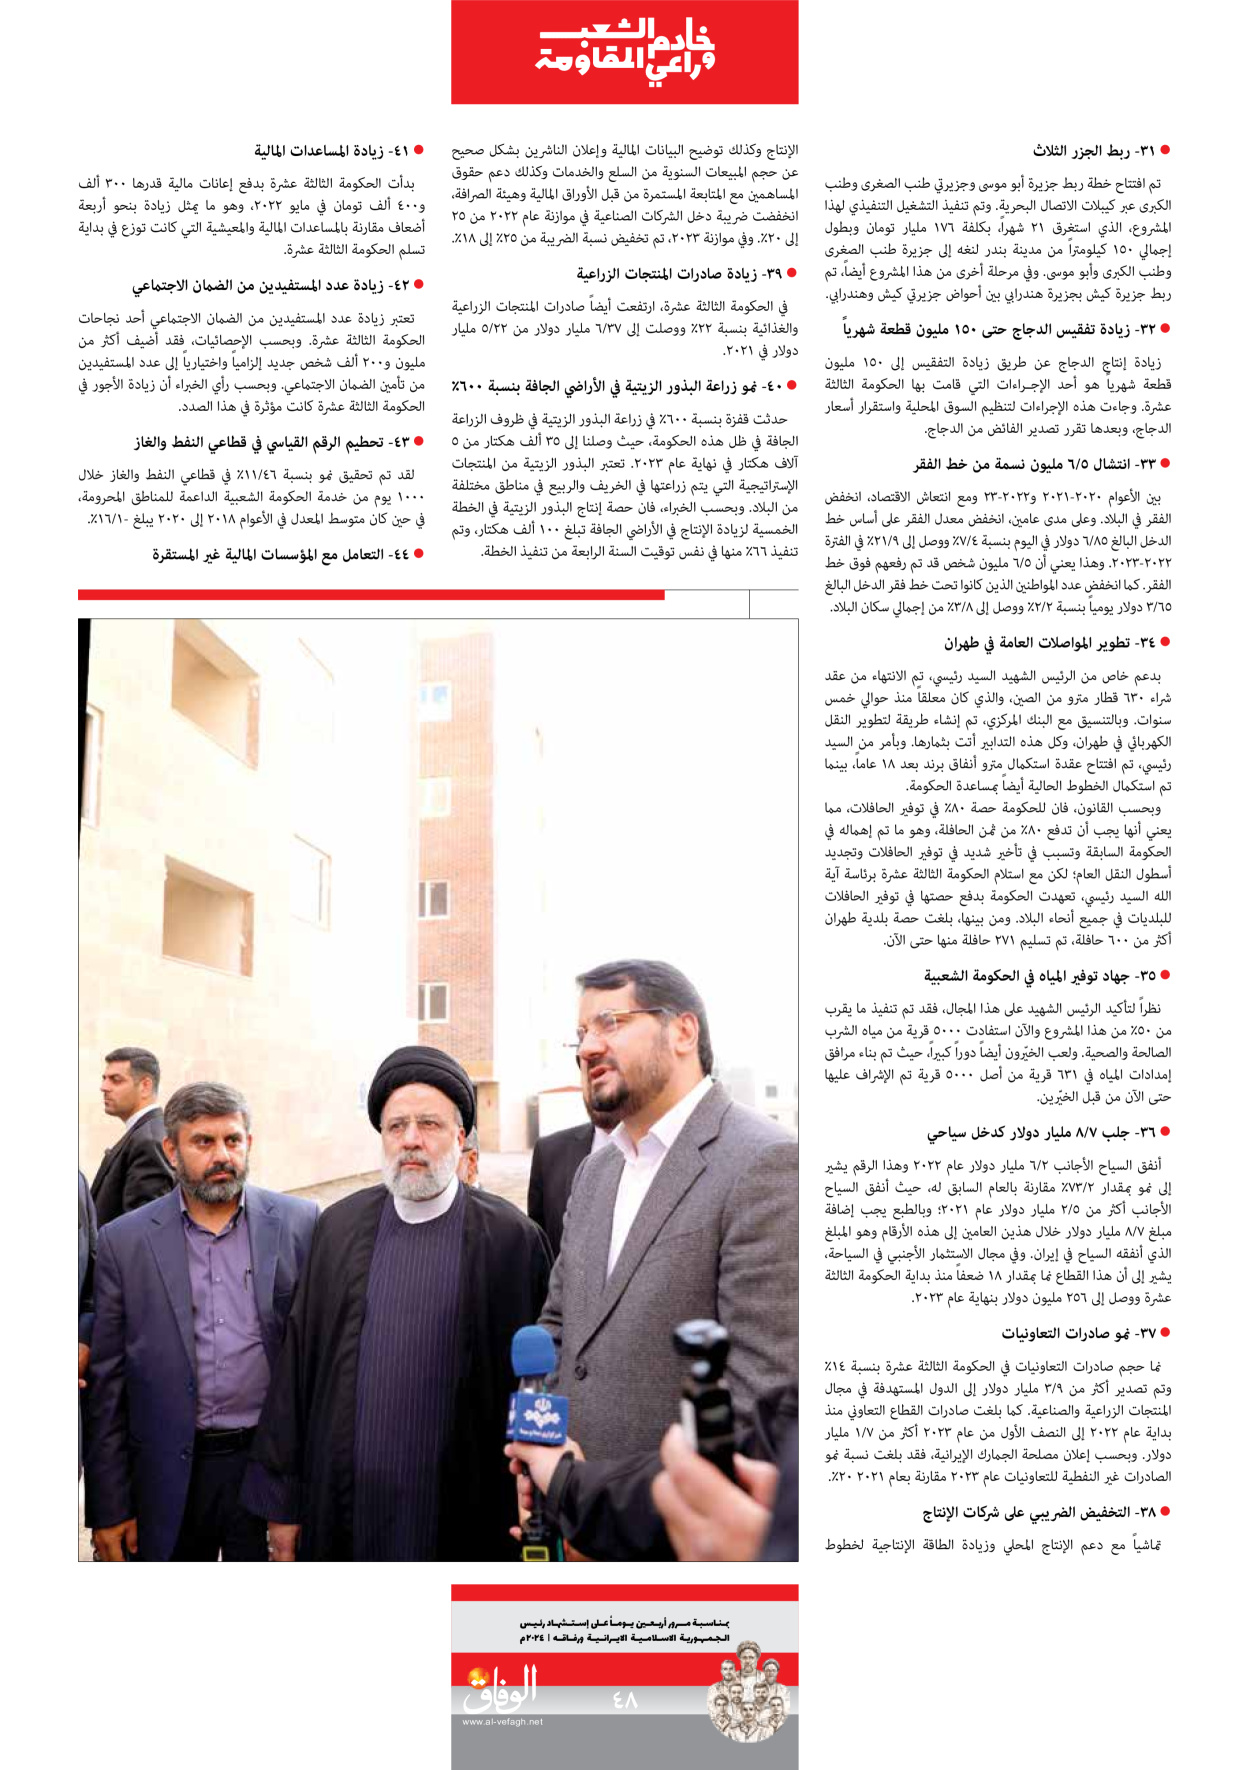 صحیفة ایران الدولیة الوفاق - ملحق ویژه نامه چهلم شهید رییسی - ٢٩ يونيو ٢٠٢٤ - الصفحة ٤۸